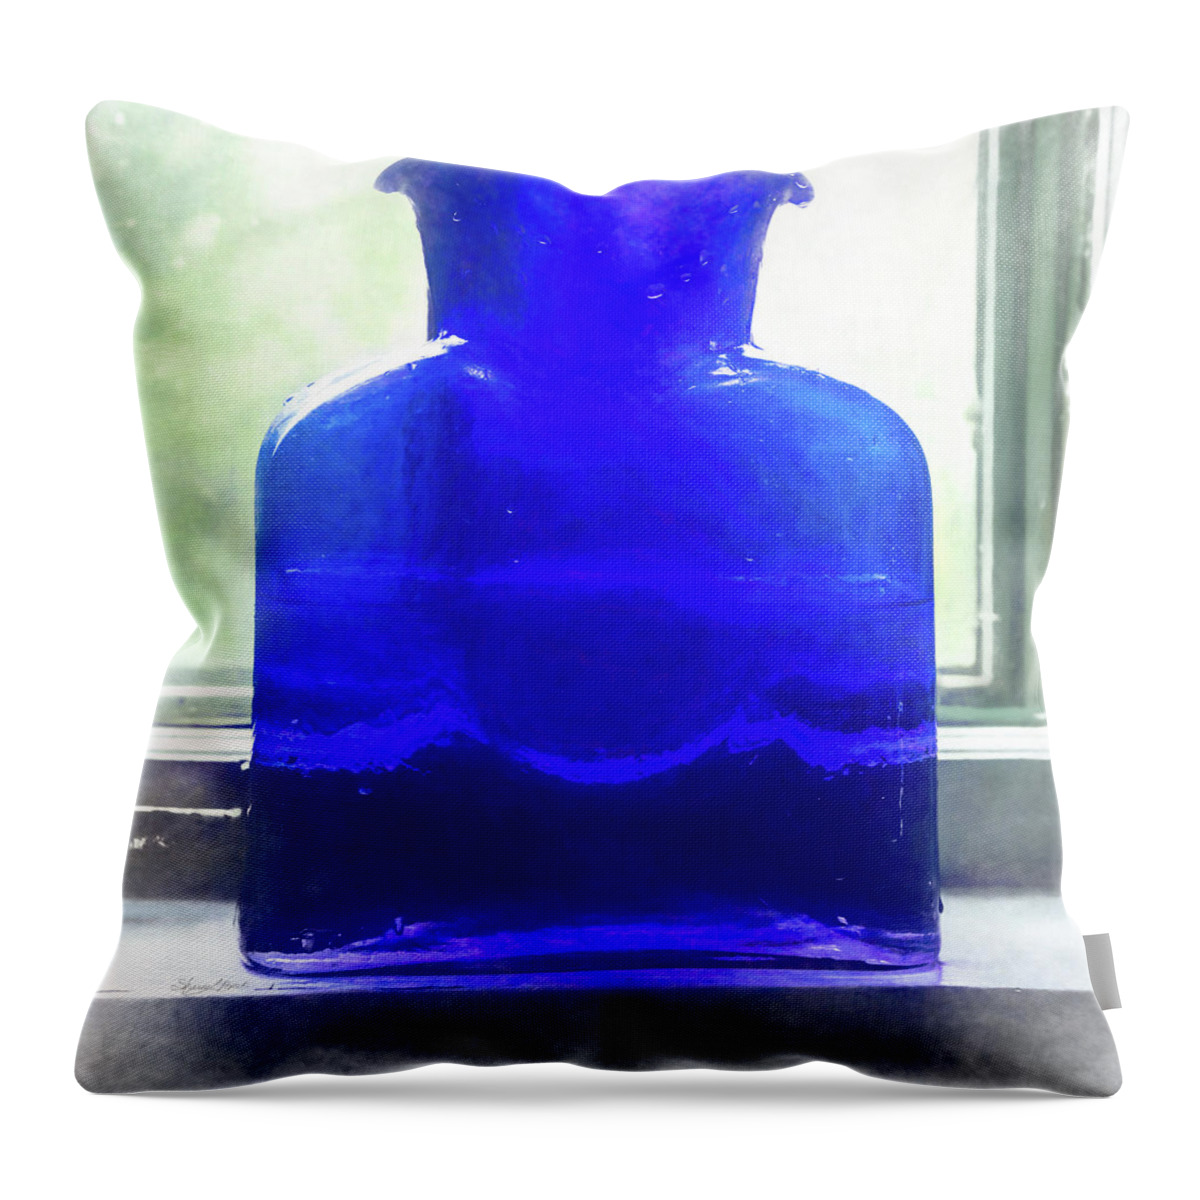 Blue Bottle In The Window Throw Pillow featuring the photograph Blue Bottle in the Window by Sharon Popek